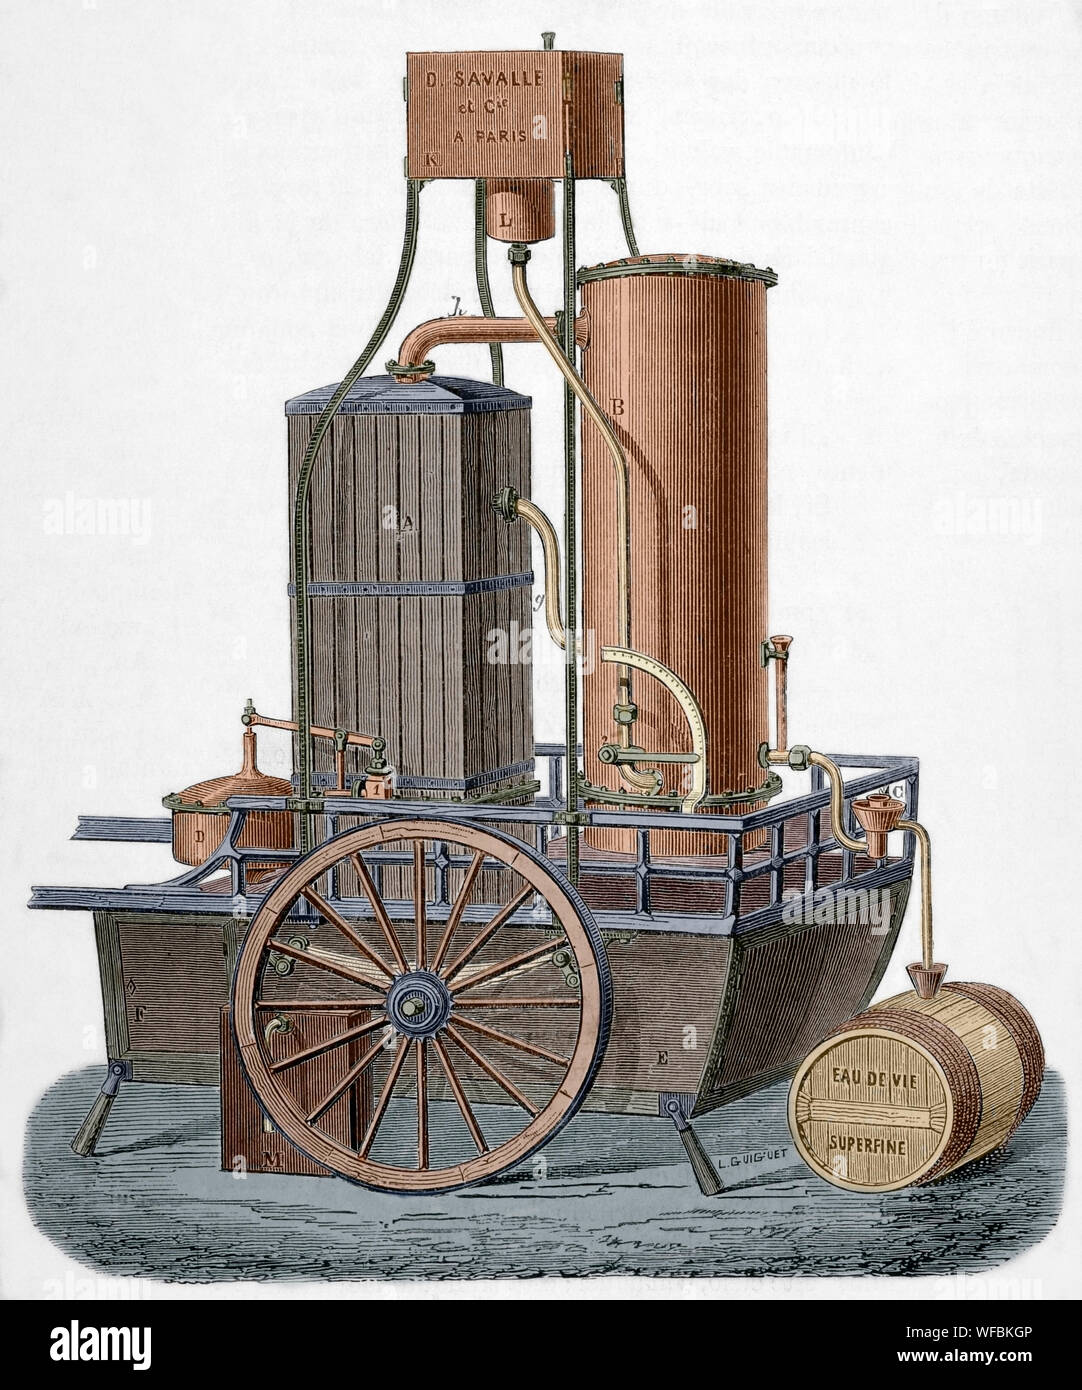 Locomobile. Motor de tracción para la destilación de vinos, construido por M. Savalle. Funcionó por vapor. Este modelo podría producir 160 hectolitros de vino. Se componía de una columna rectangular de un nuevo sistema, un vino y un condensador de calefacción regulador de vapor. También había un depósito de vino equipado con un regulador de potencia. Dibujo por L. Guiguet. Grabado. La ilustracion española y americana, 15 de octubre de 1876. Posteriormente coloración. Foto de stock